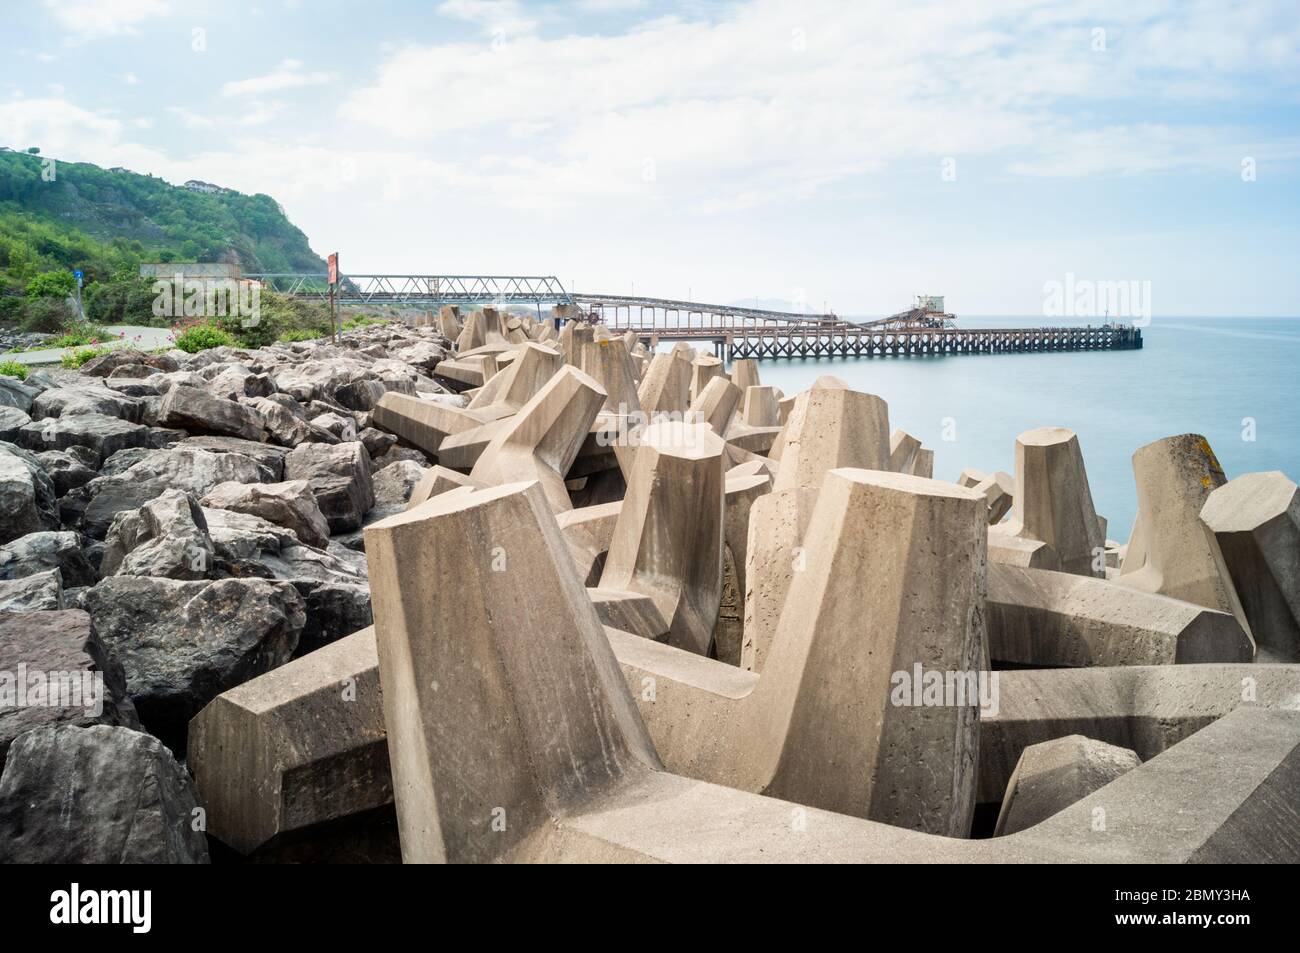 Dolosse de béton (pluriel de dolos) sur la côte nord du pays de Galles, structures géantes utilisées pour dissiper le pouvoir des vagues qu'elles agissent comme brise-lames. Banque D'Images